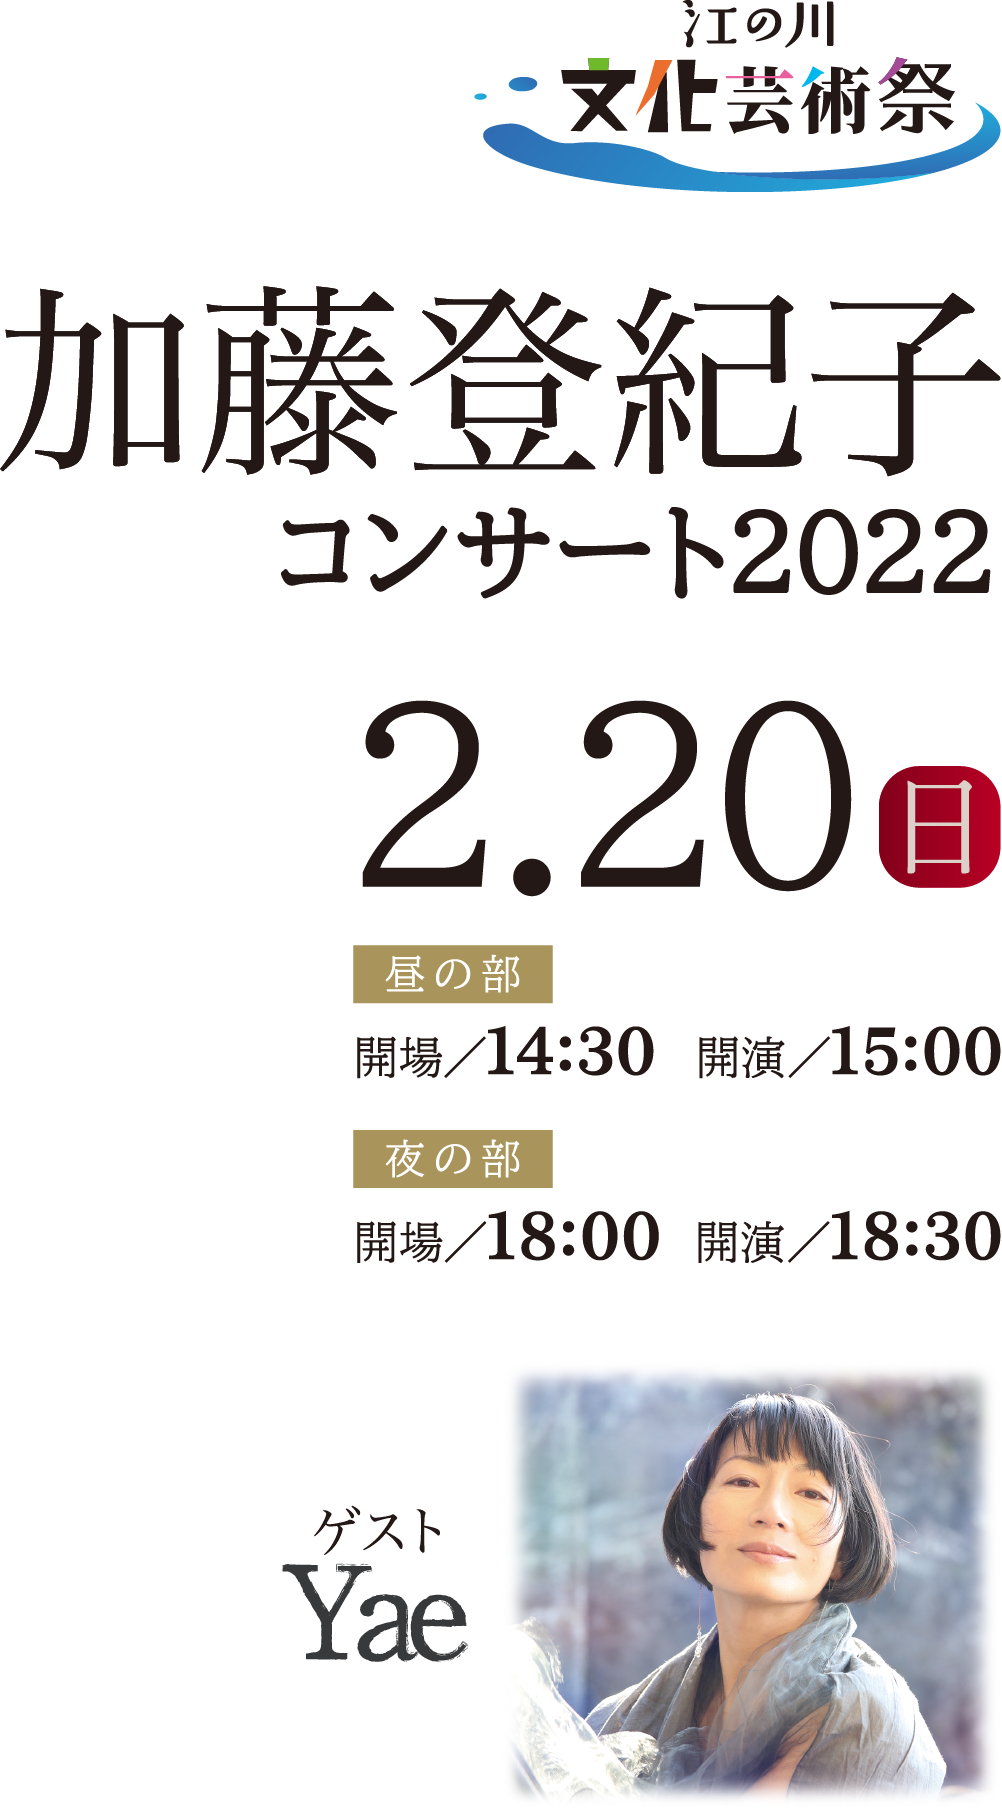 江の川 文化芸術祭 加藤登紀子 コンサート2022